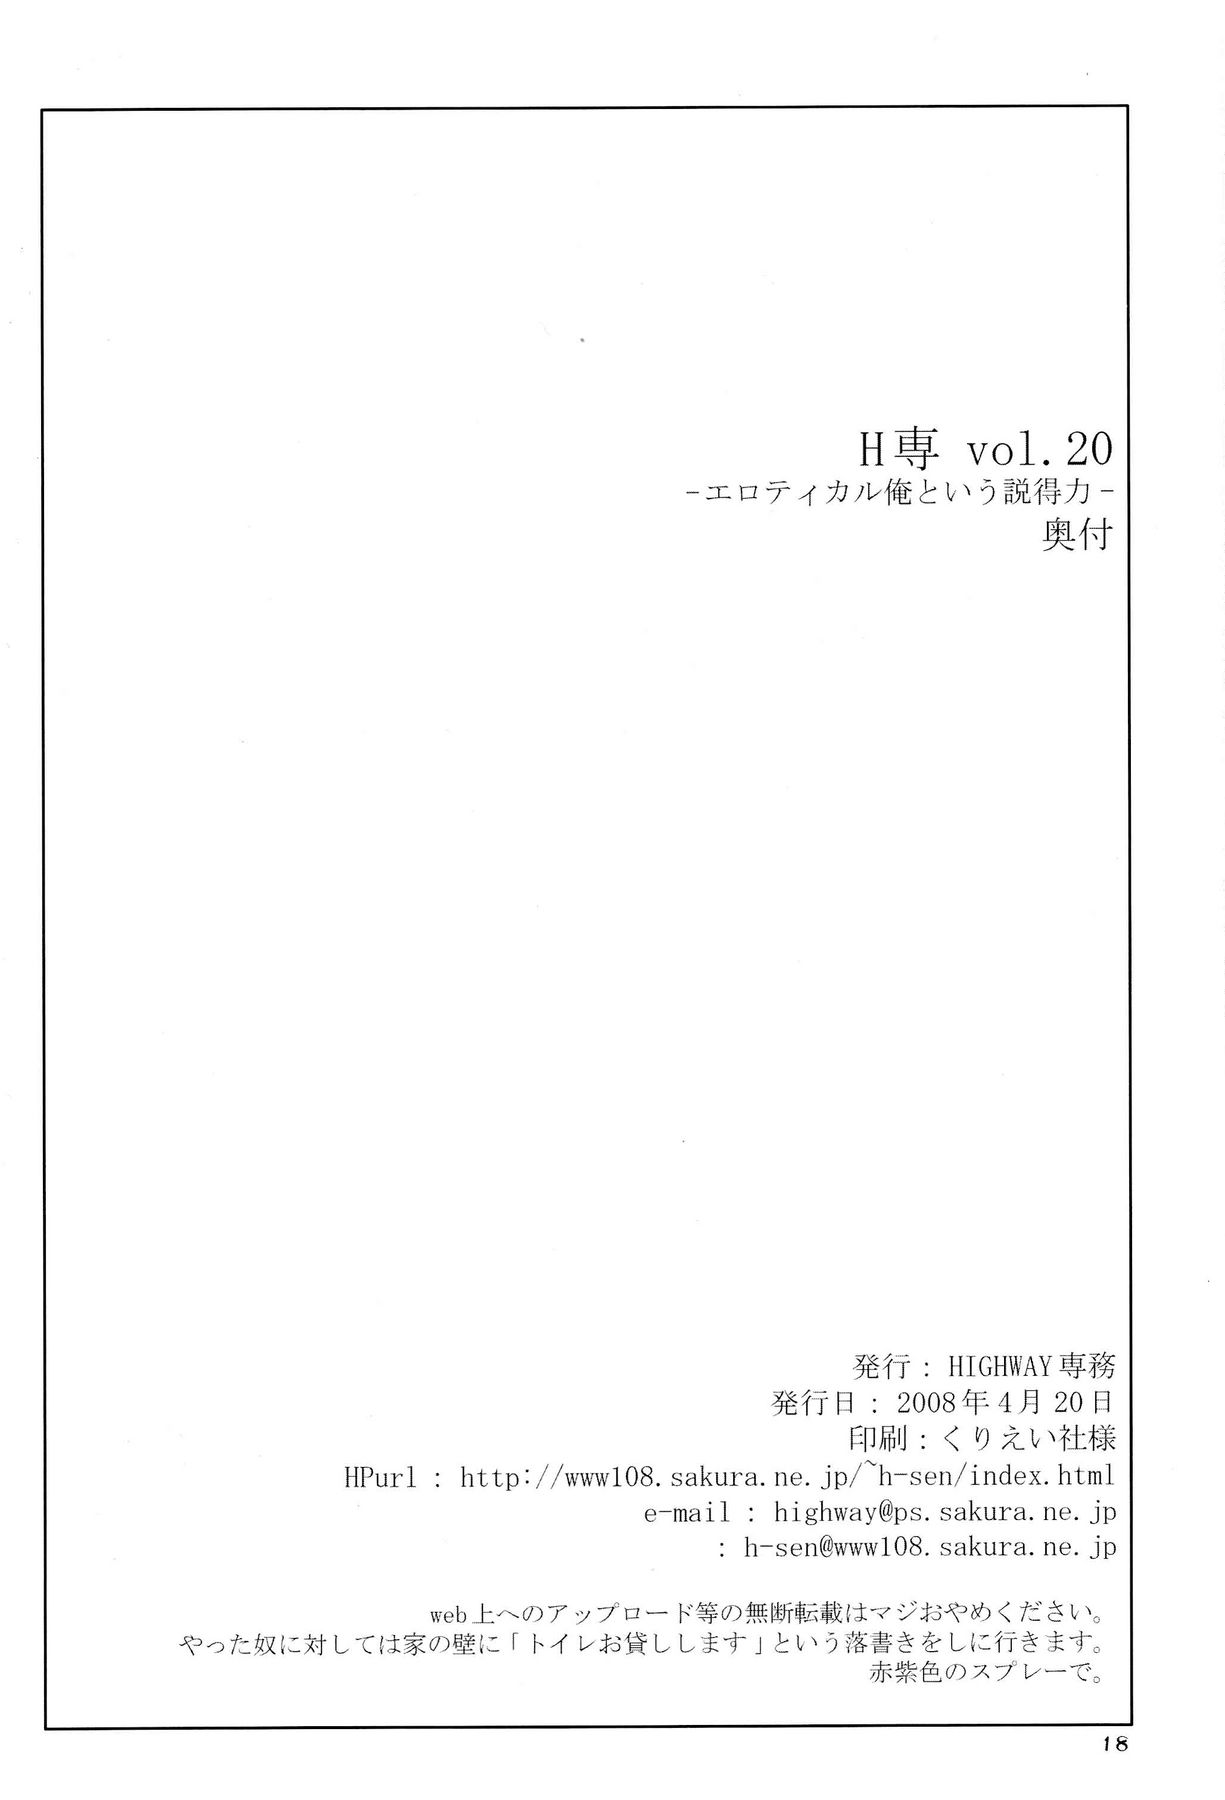 (サンクリ39) [HIGHWAY専務 (最後尾)] H専 vol.20 (ブリーチ)